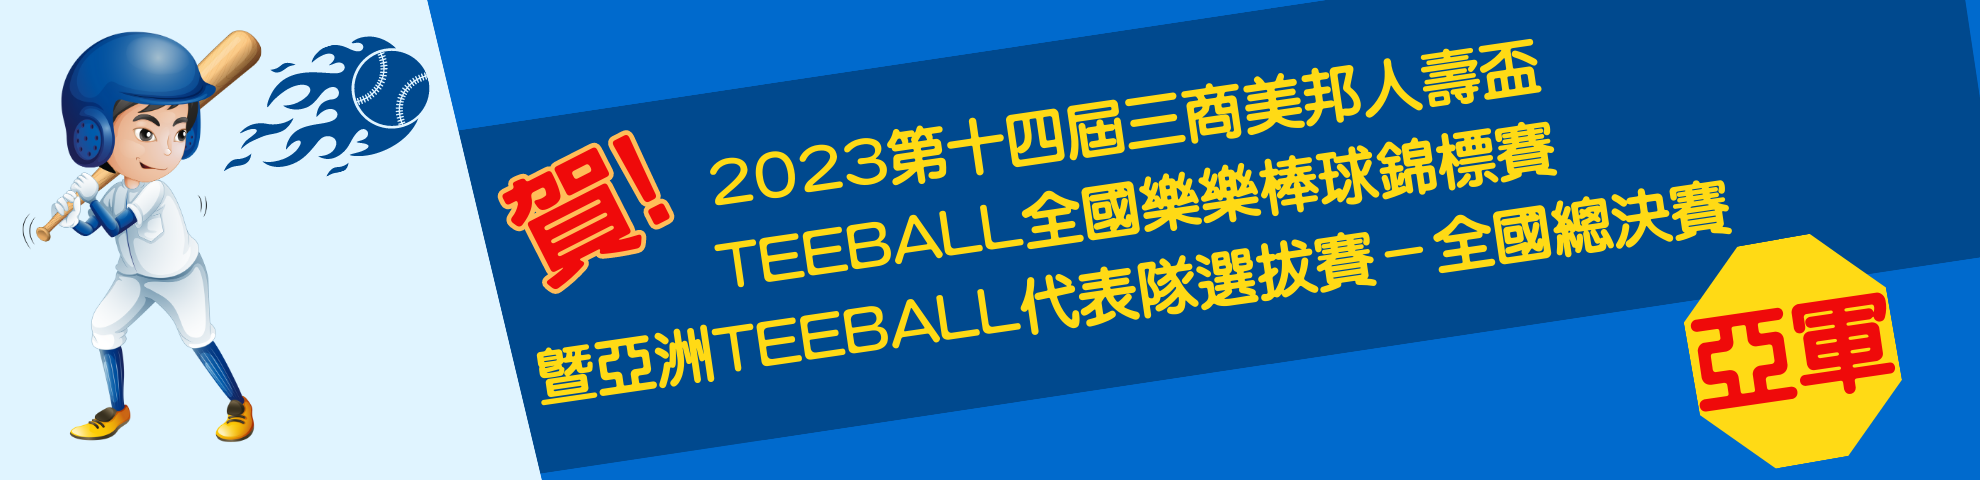 2023第十四屆三商美邦人壽盃 Teeball全國樂樂棒球錦標賽 暨亞洲Teeball代表隊選拔賽－全國總決賽